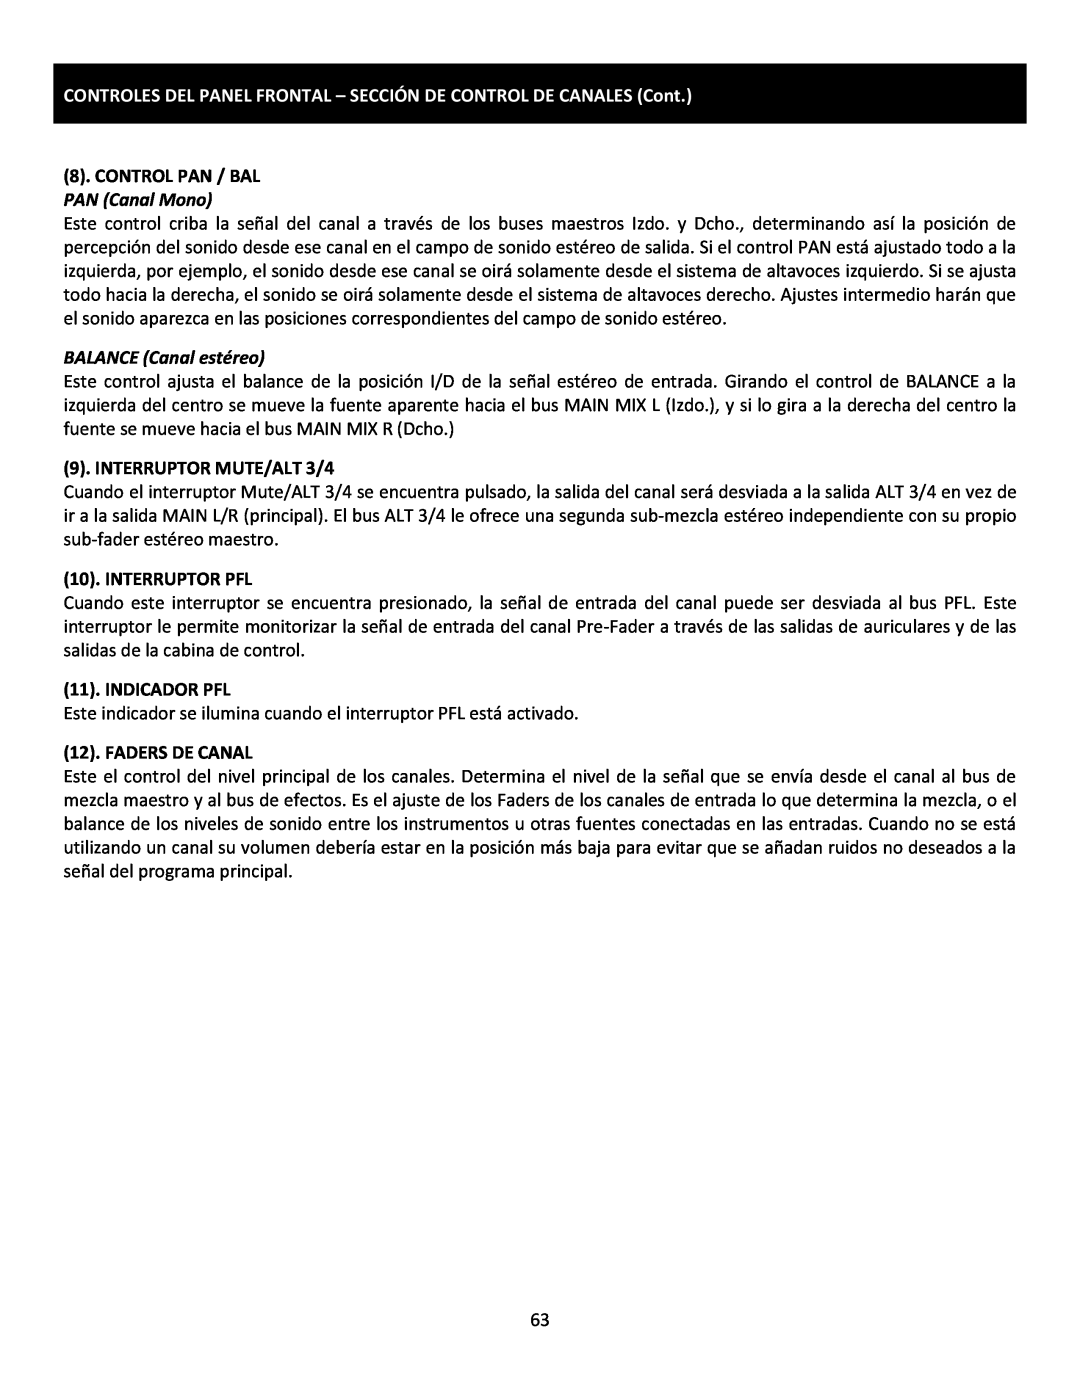 Cerwin-Vega CVM-1224FXUSB manual CONTROLES DEL PANEL FRONTAL - SECCIÓN DE CONTROL DE CANALES Cont, Control Pan / Bal 